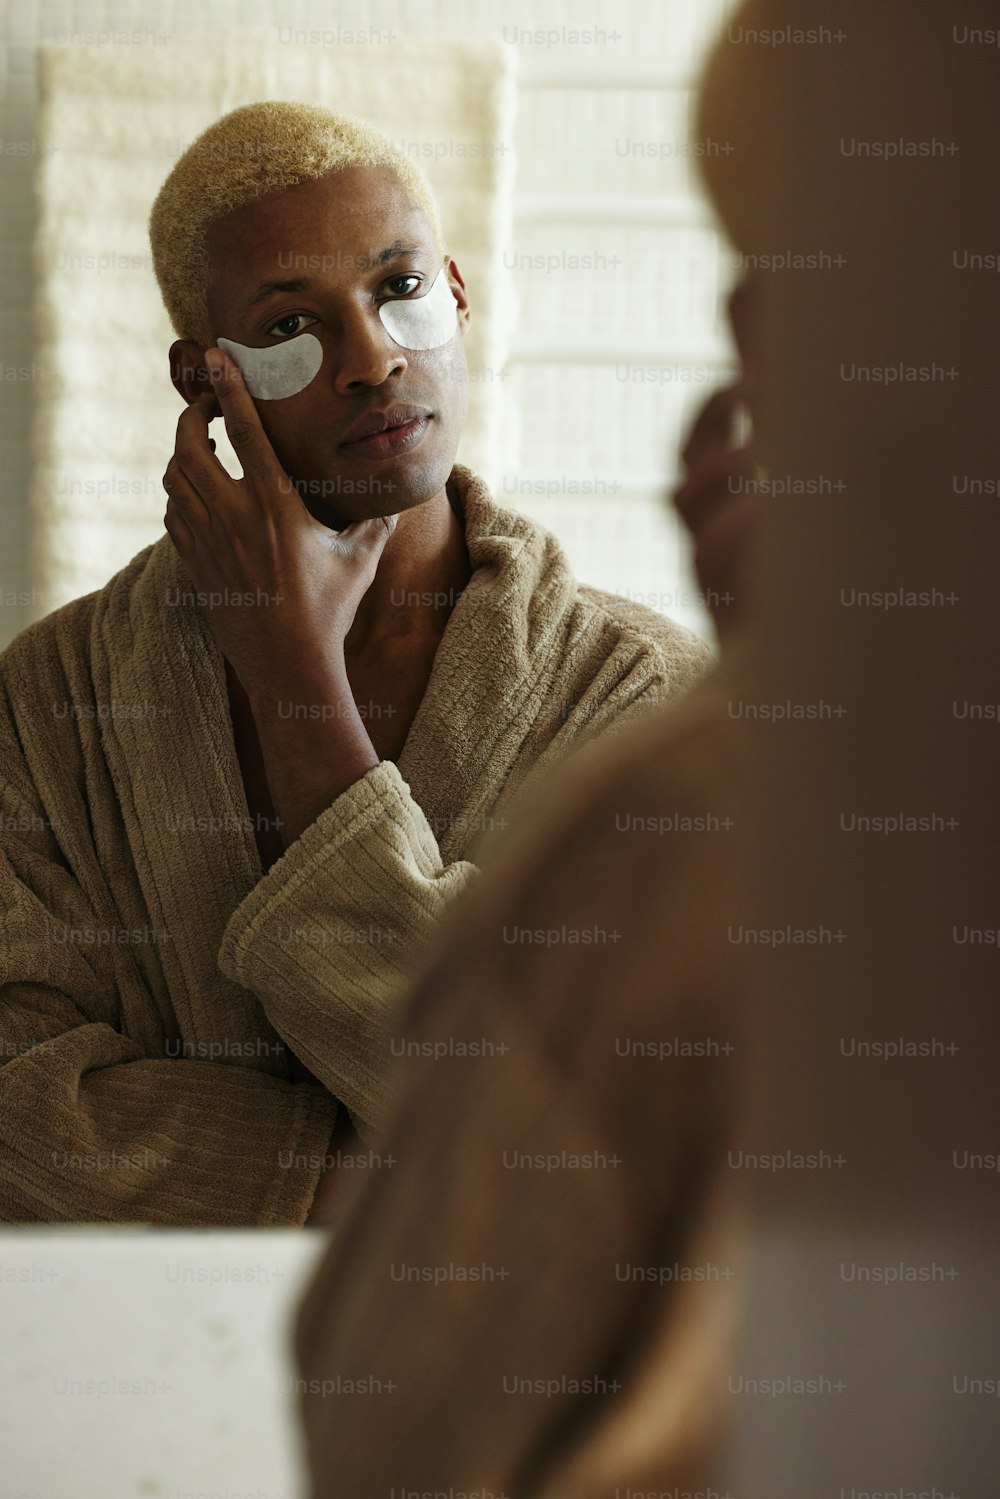 Un homme en peignoir se rase le visage